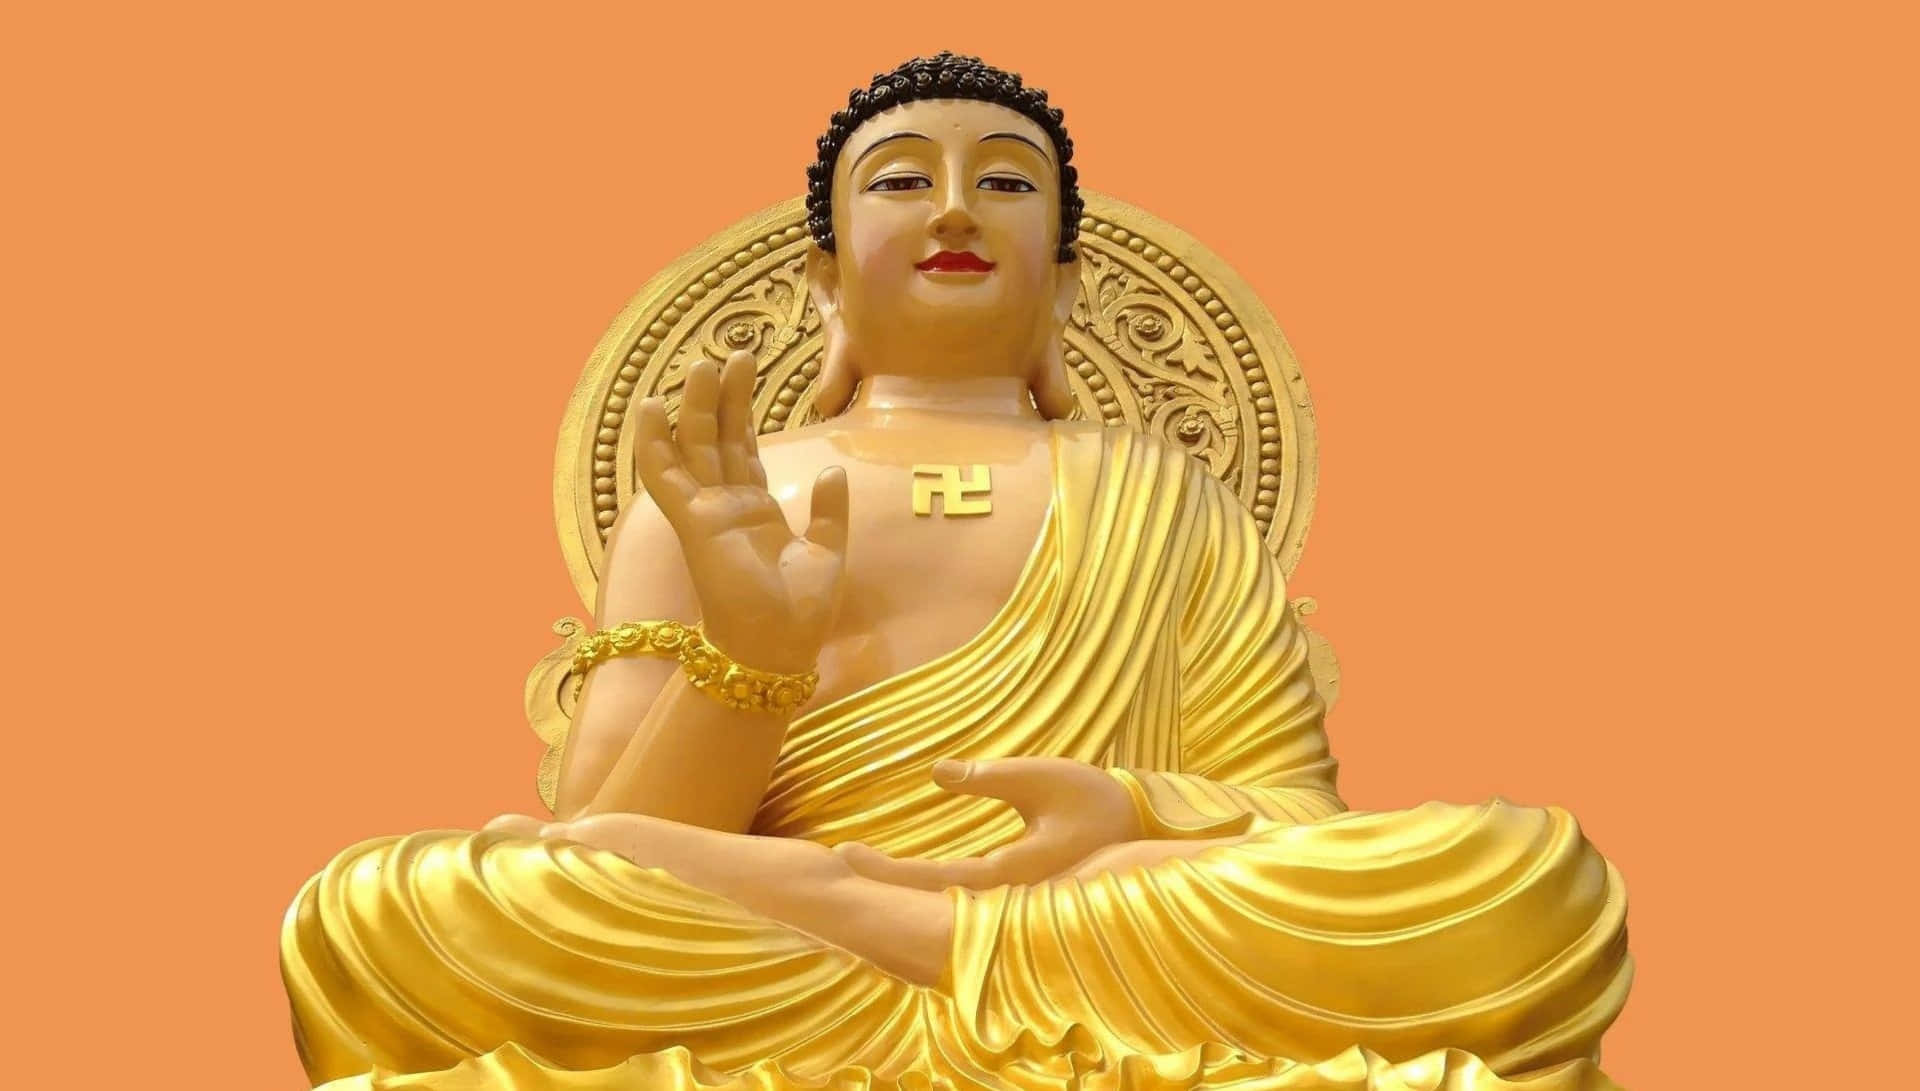 Enguld Buddha Staty Som Sitter På En Orange Bakgrund.